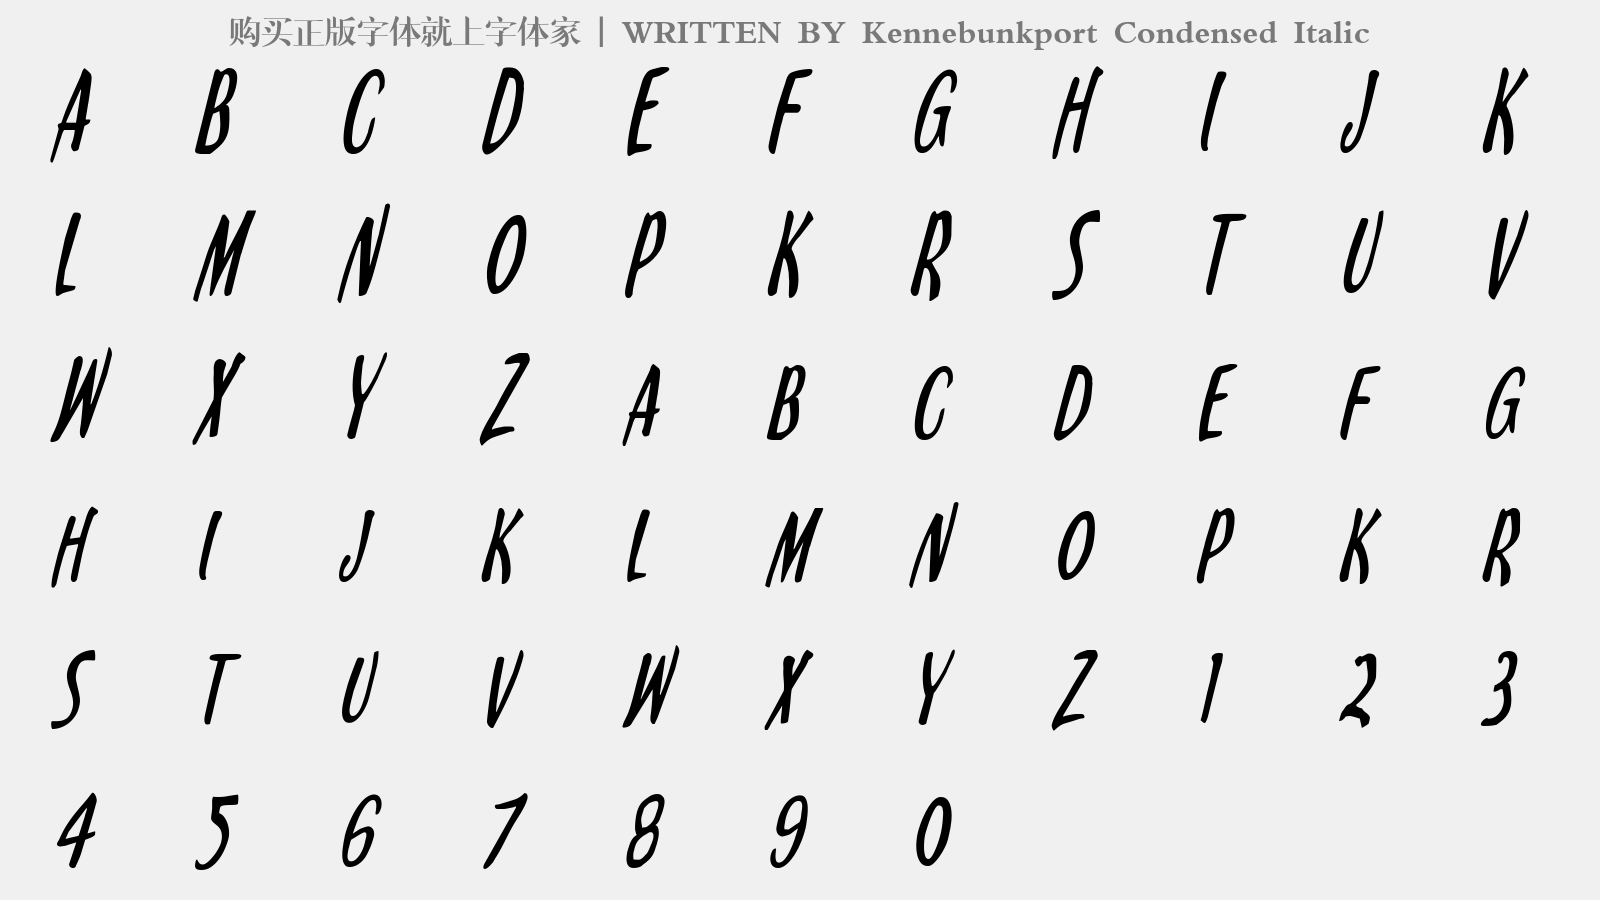 Kennebunkport Condensed Italic - 大写字母/小写字母/数字